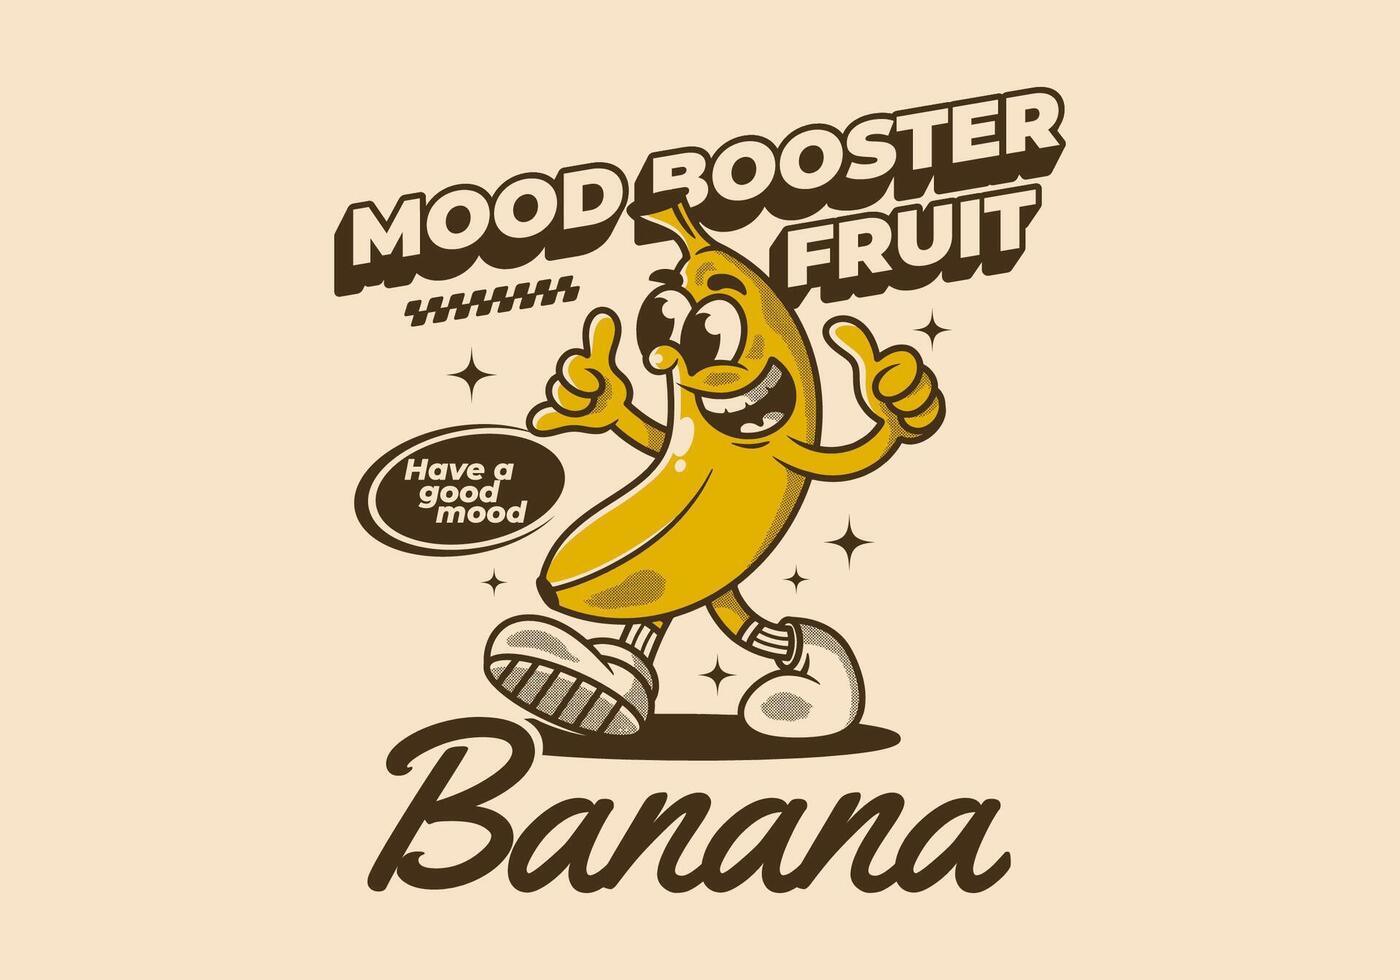 Mood booster fruit. Mascot character illustration of walking banana vector